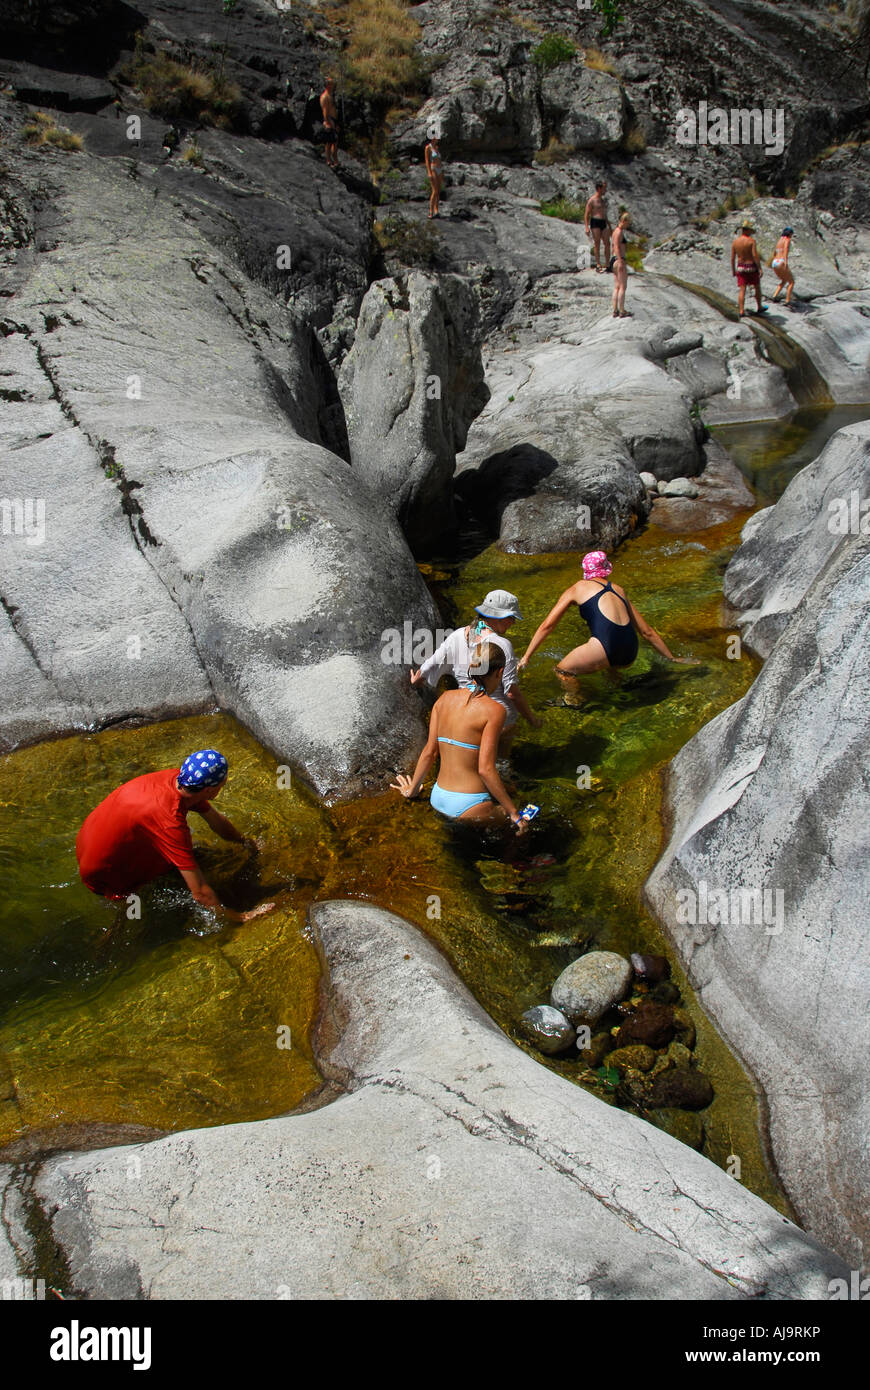 Groupe de touristes s'amuser dans la rivière Golo, Corse, France Banque D'Images